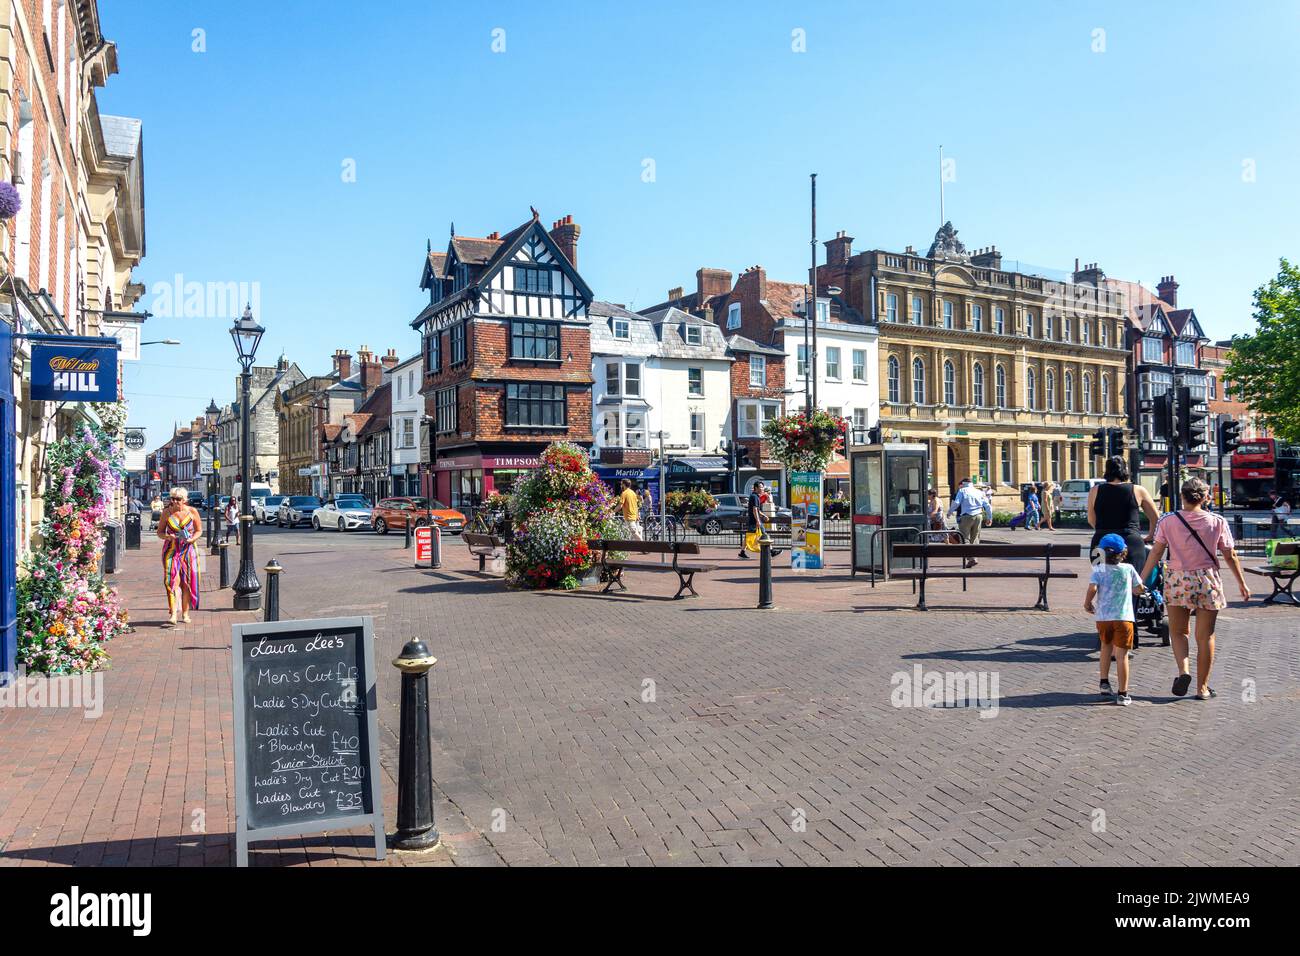 Market Place, Salisbury, Wiltshire, England, United Kingdom Stock Photo